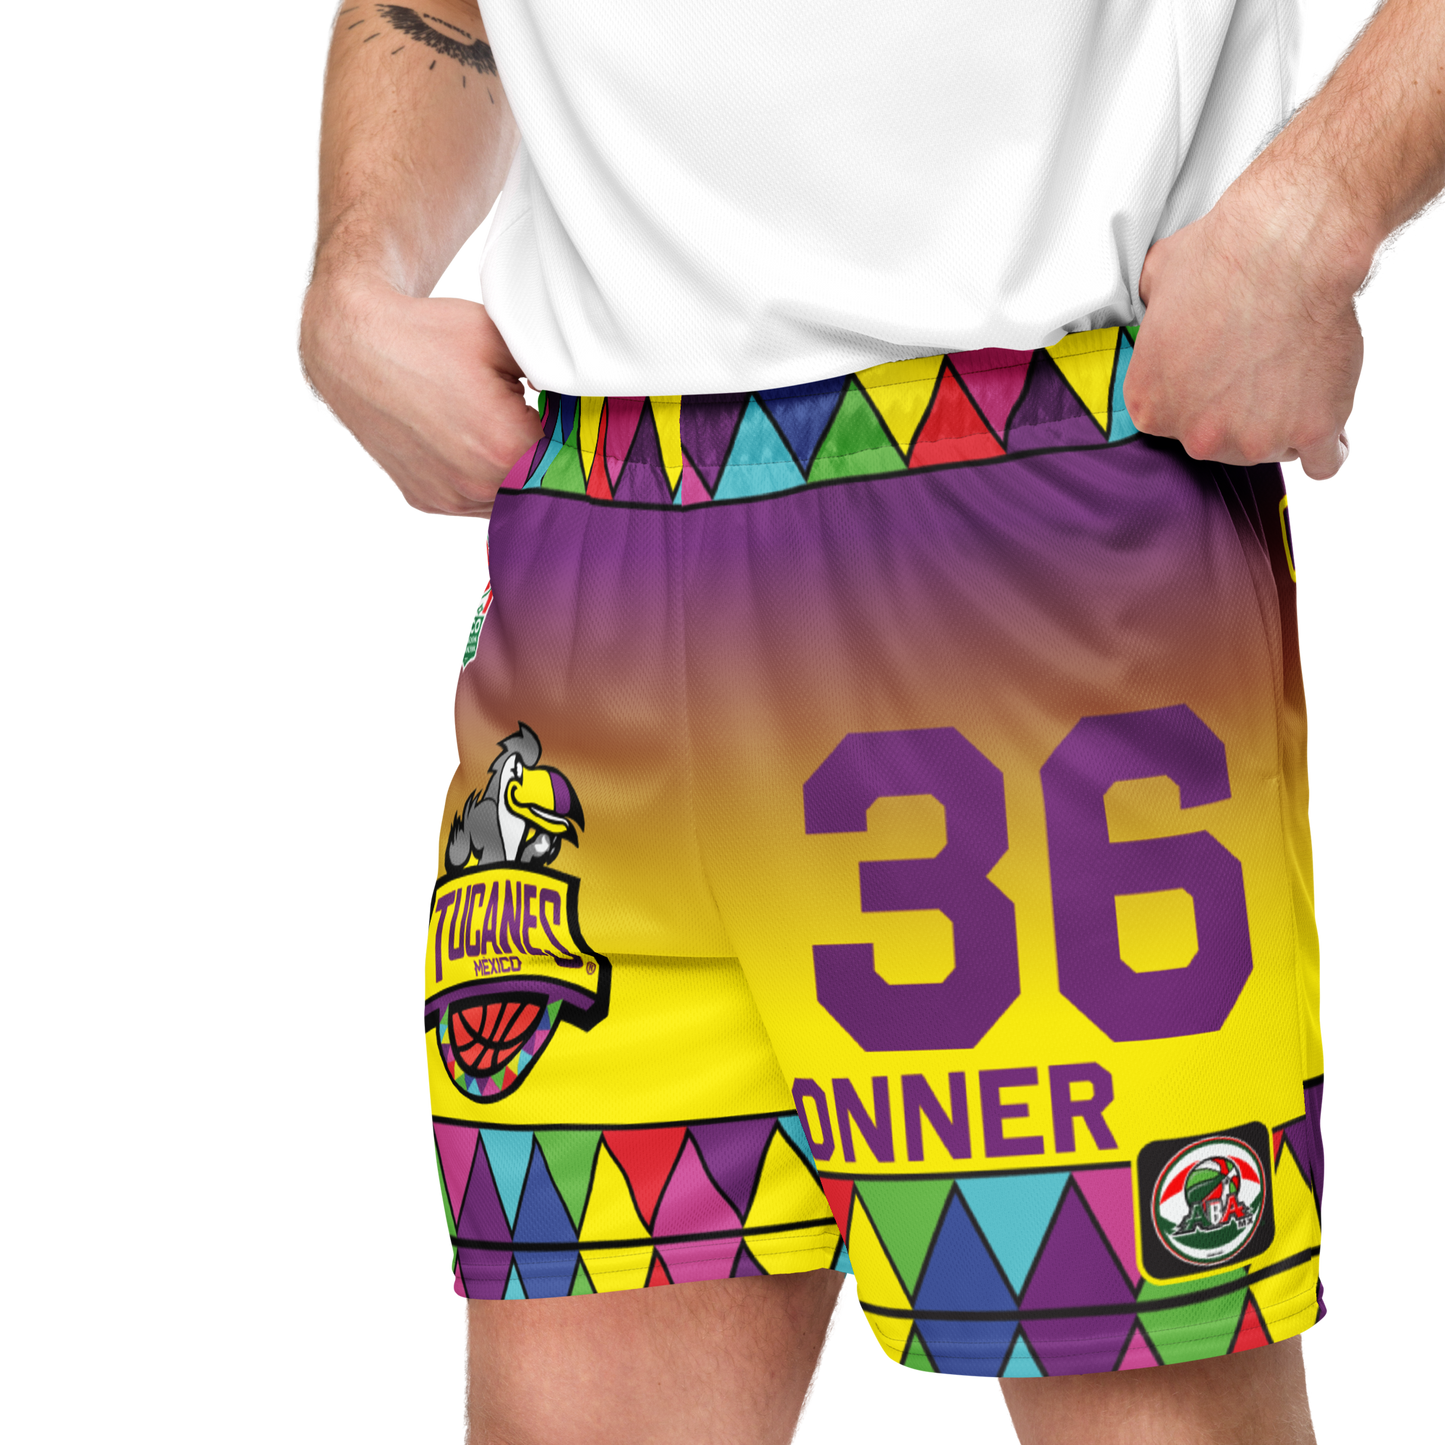 #36 Trevor Conner Basketball Team Shorts!"